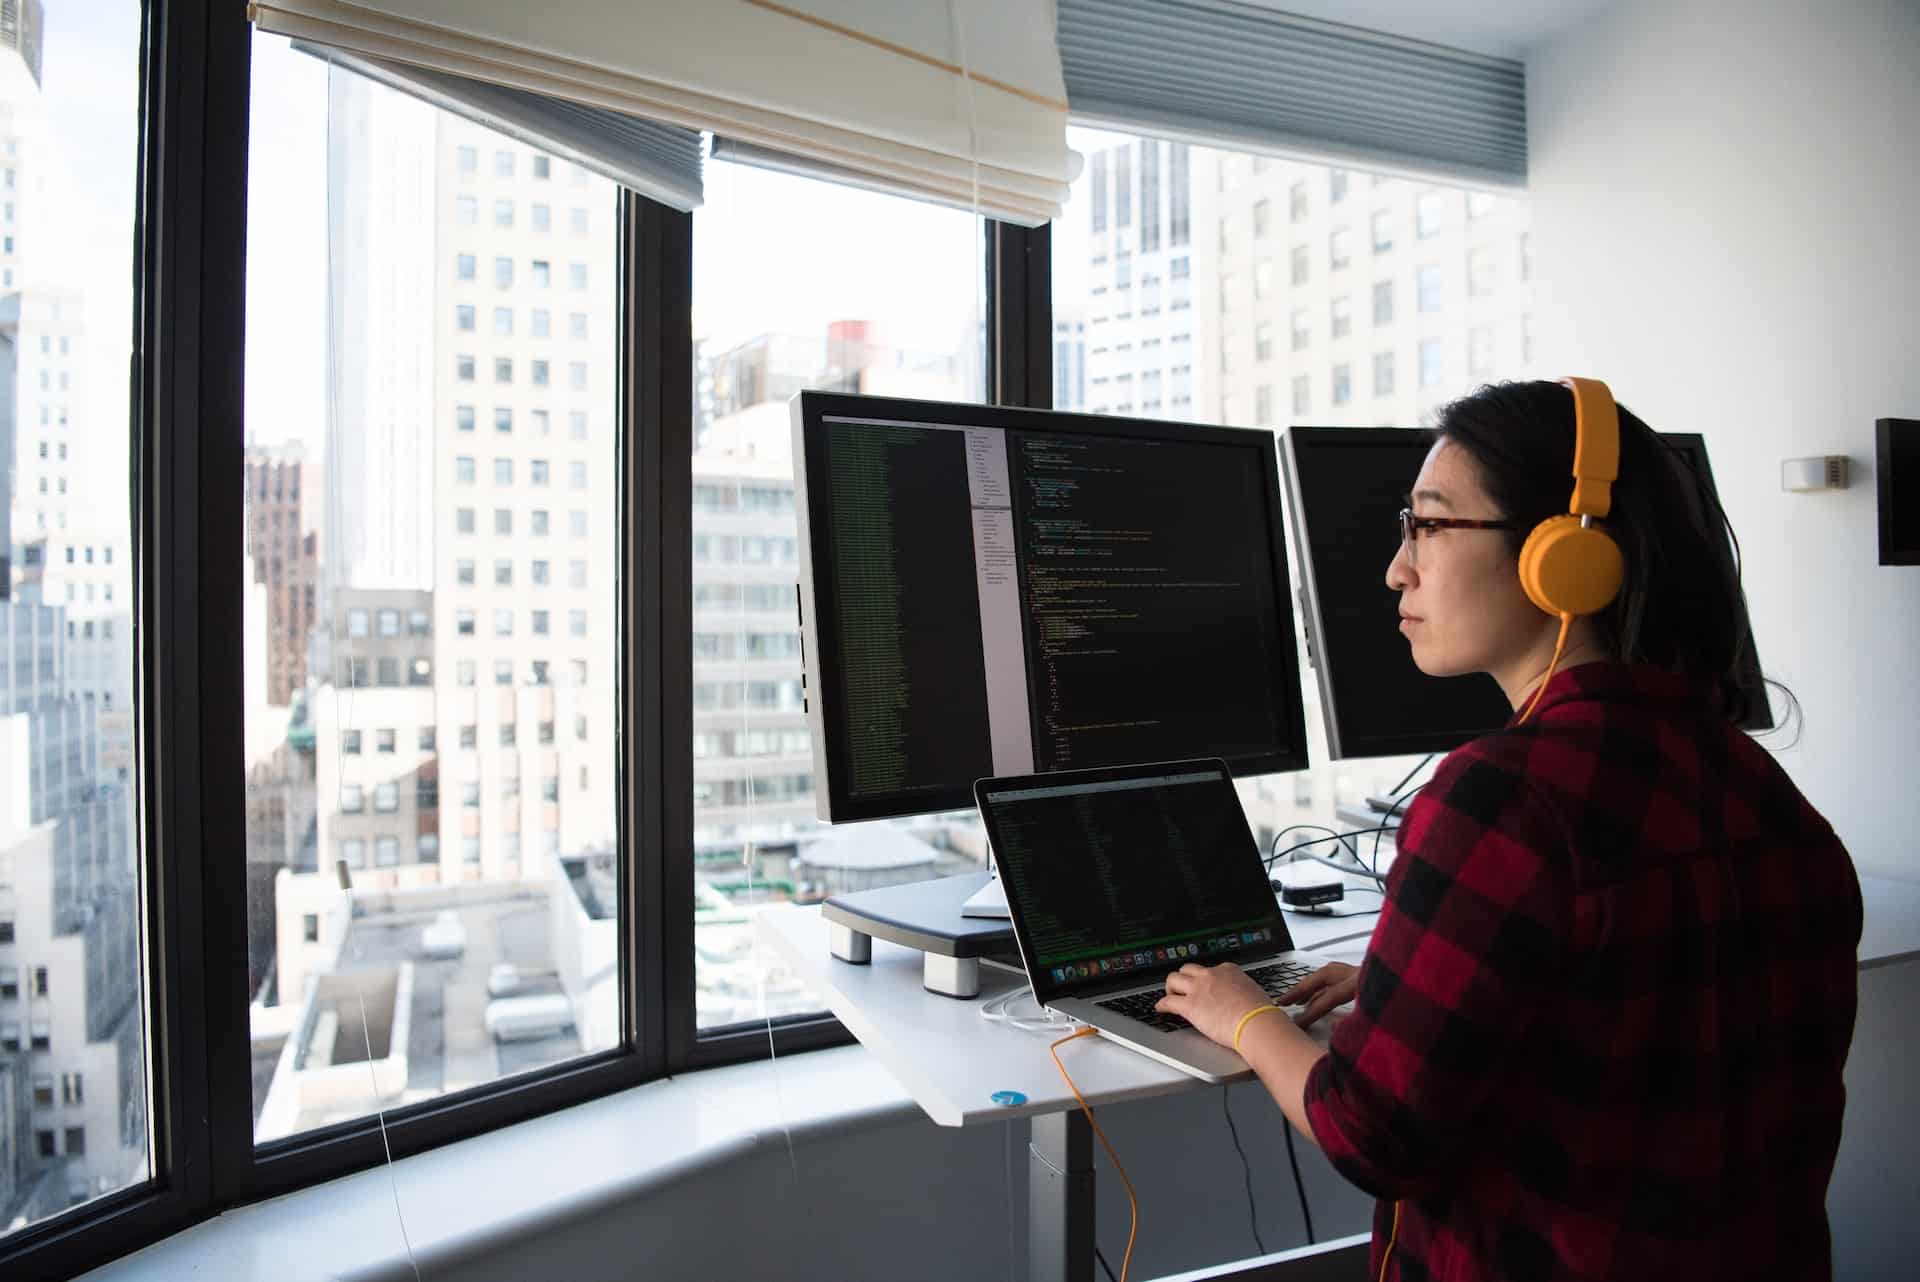 A imagem mostra uma mulher com características orientais sentada à frente de um computador atuando como desenvolvedora back-end node.js